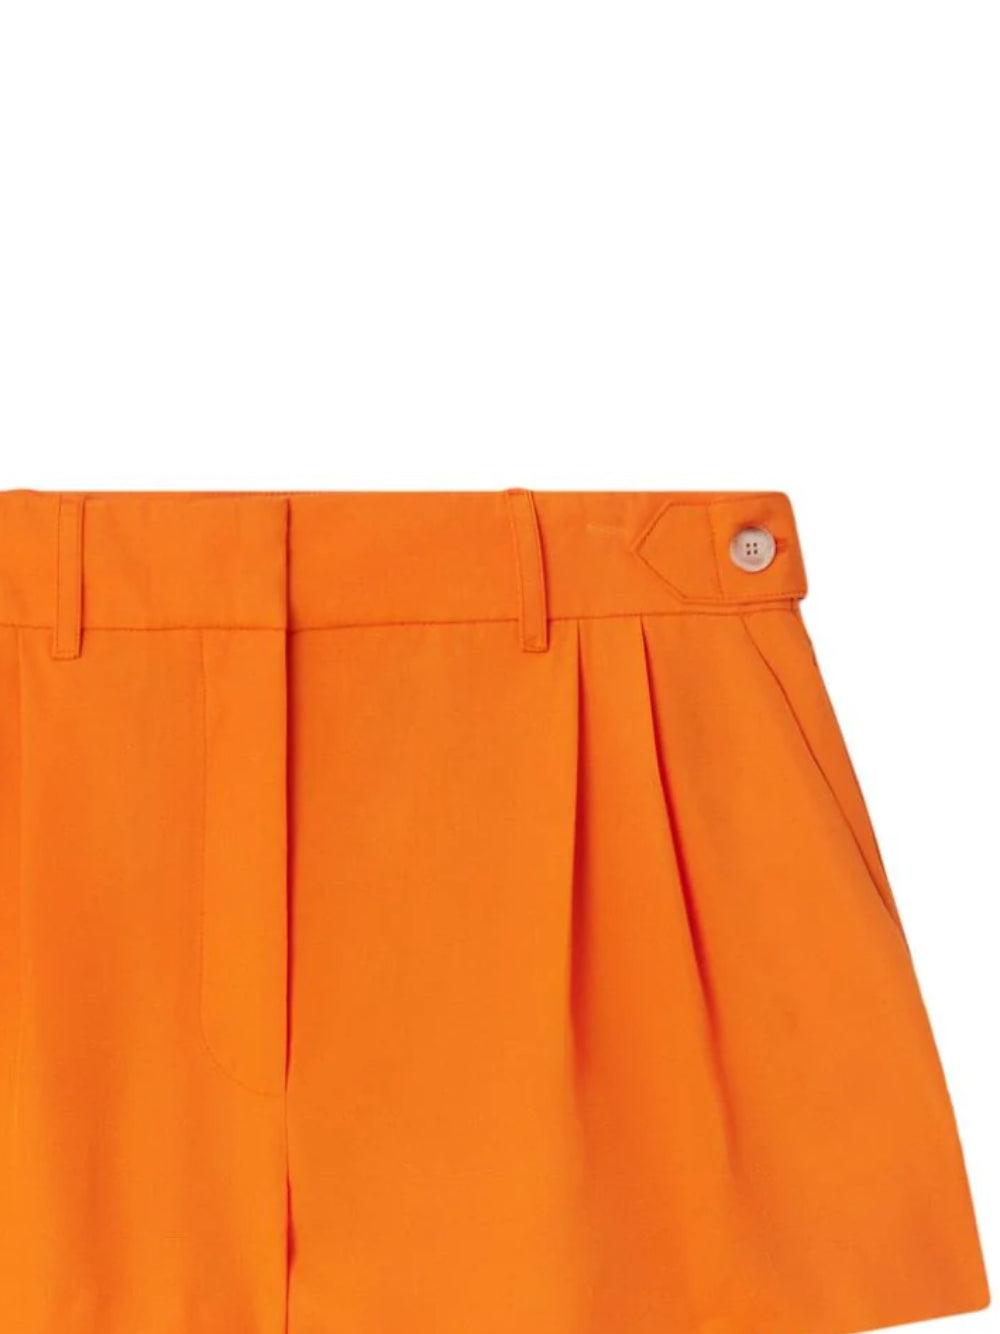 Stella McCartney 6401643 Woman  Shorts - Zuklat